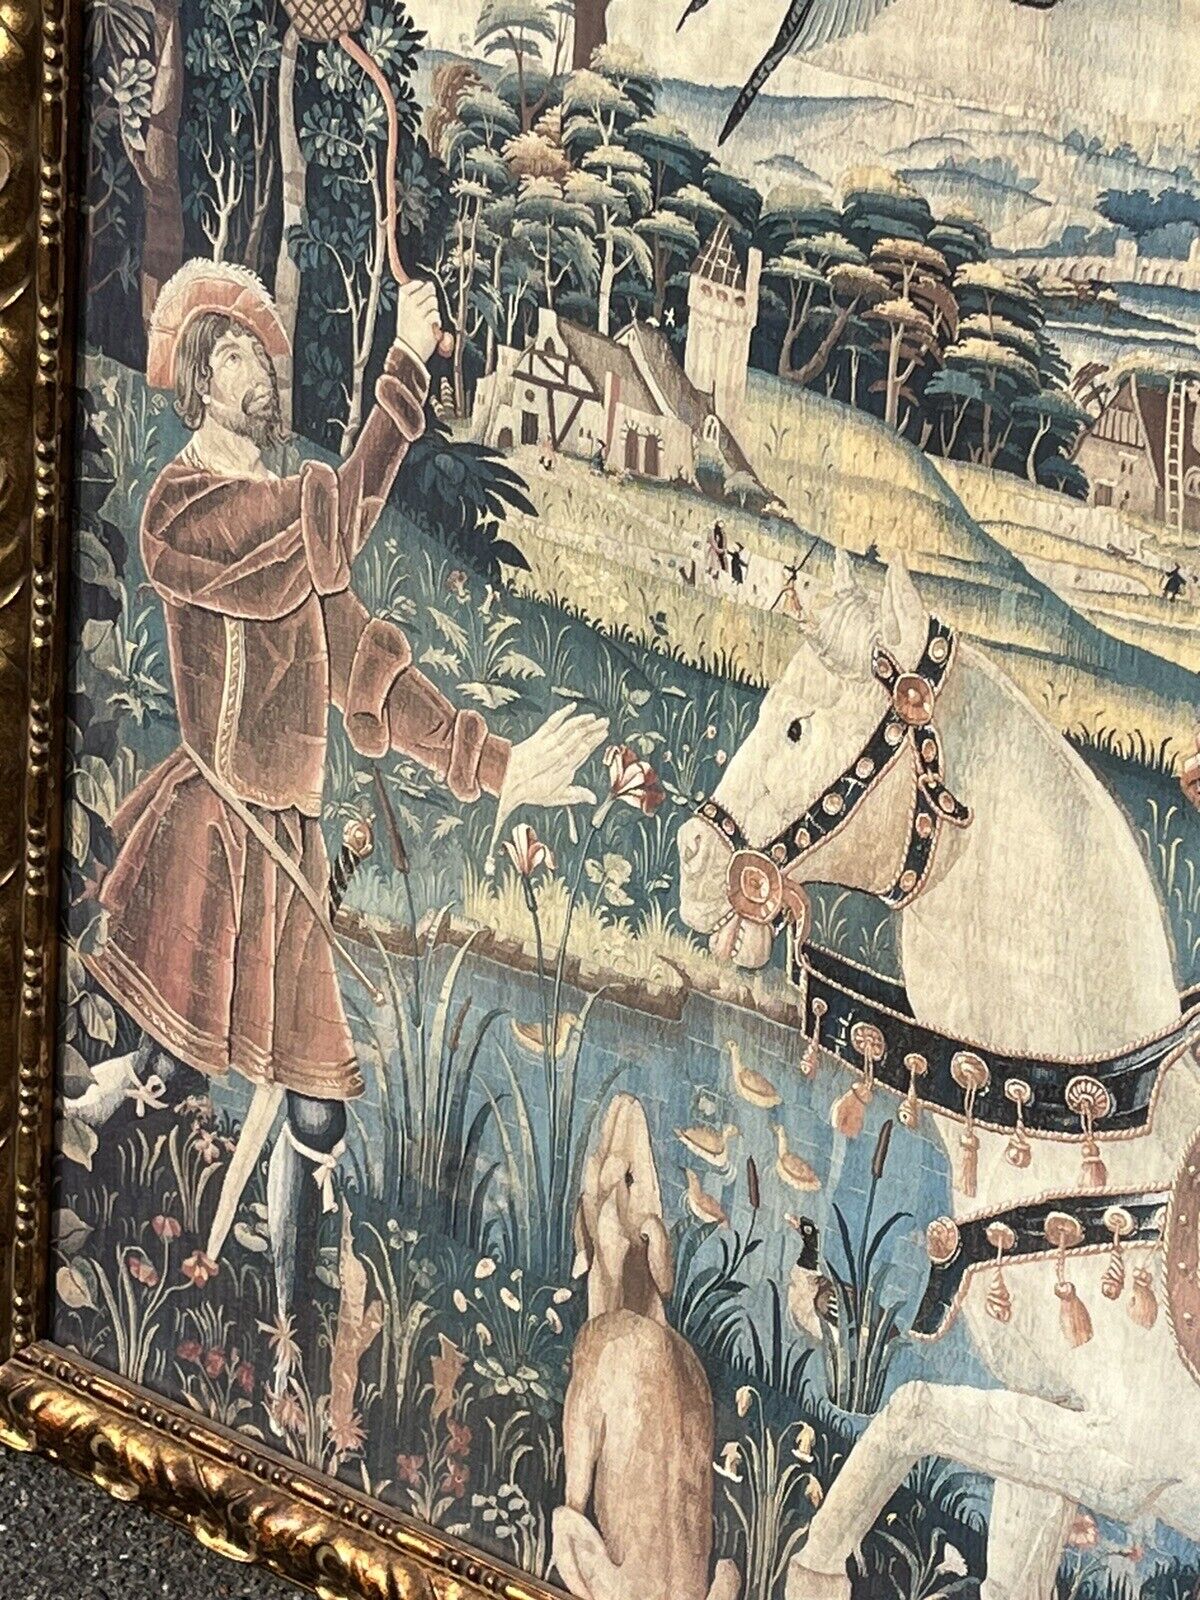 Tudor Hunting Scene Tapestry, Hunting Dogs & Birds Of Prey. HUGE IN SIZE